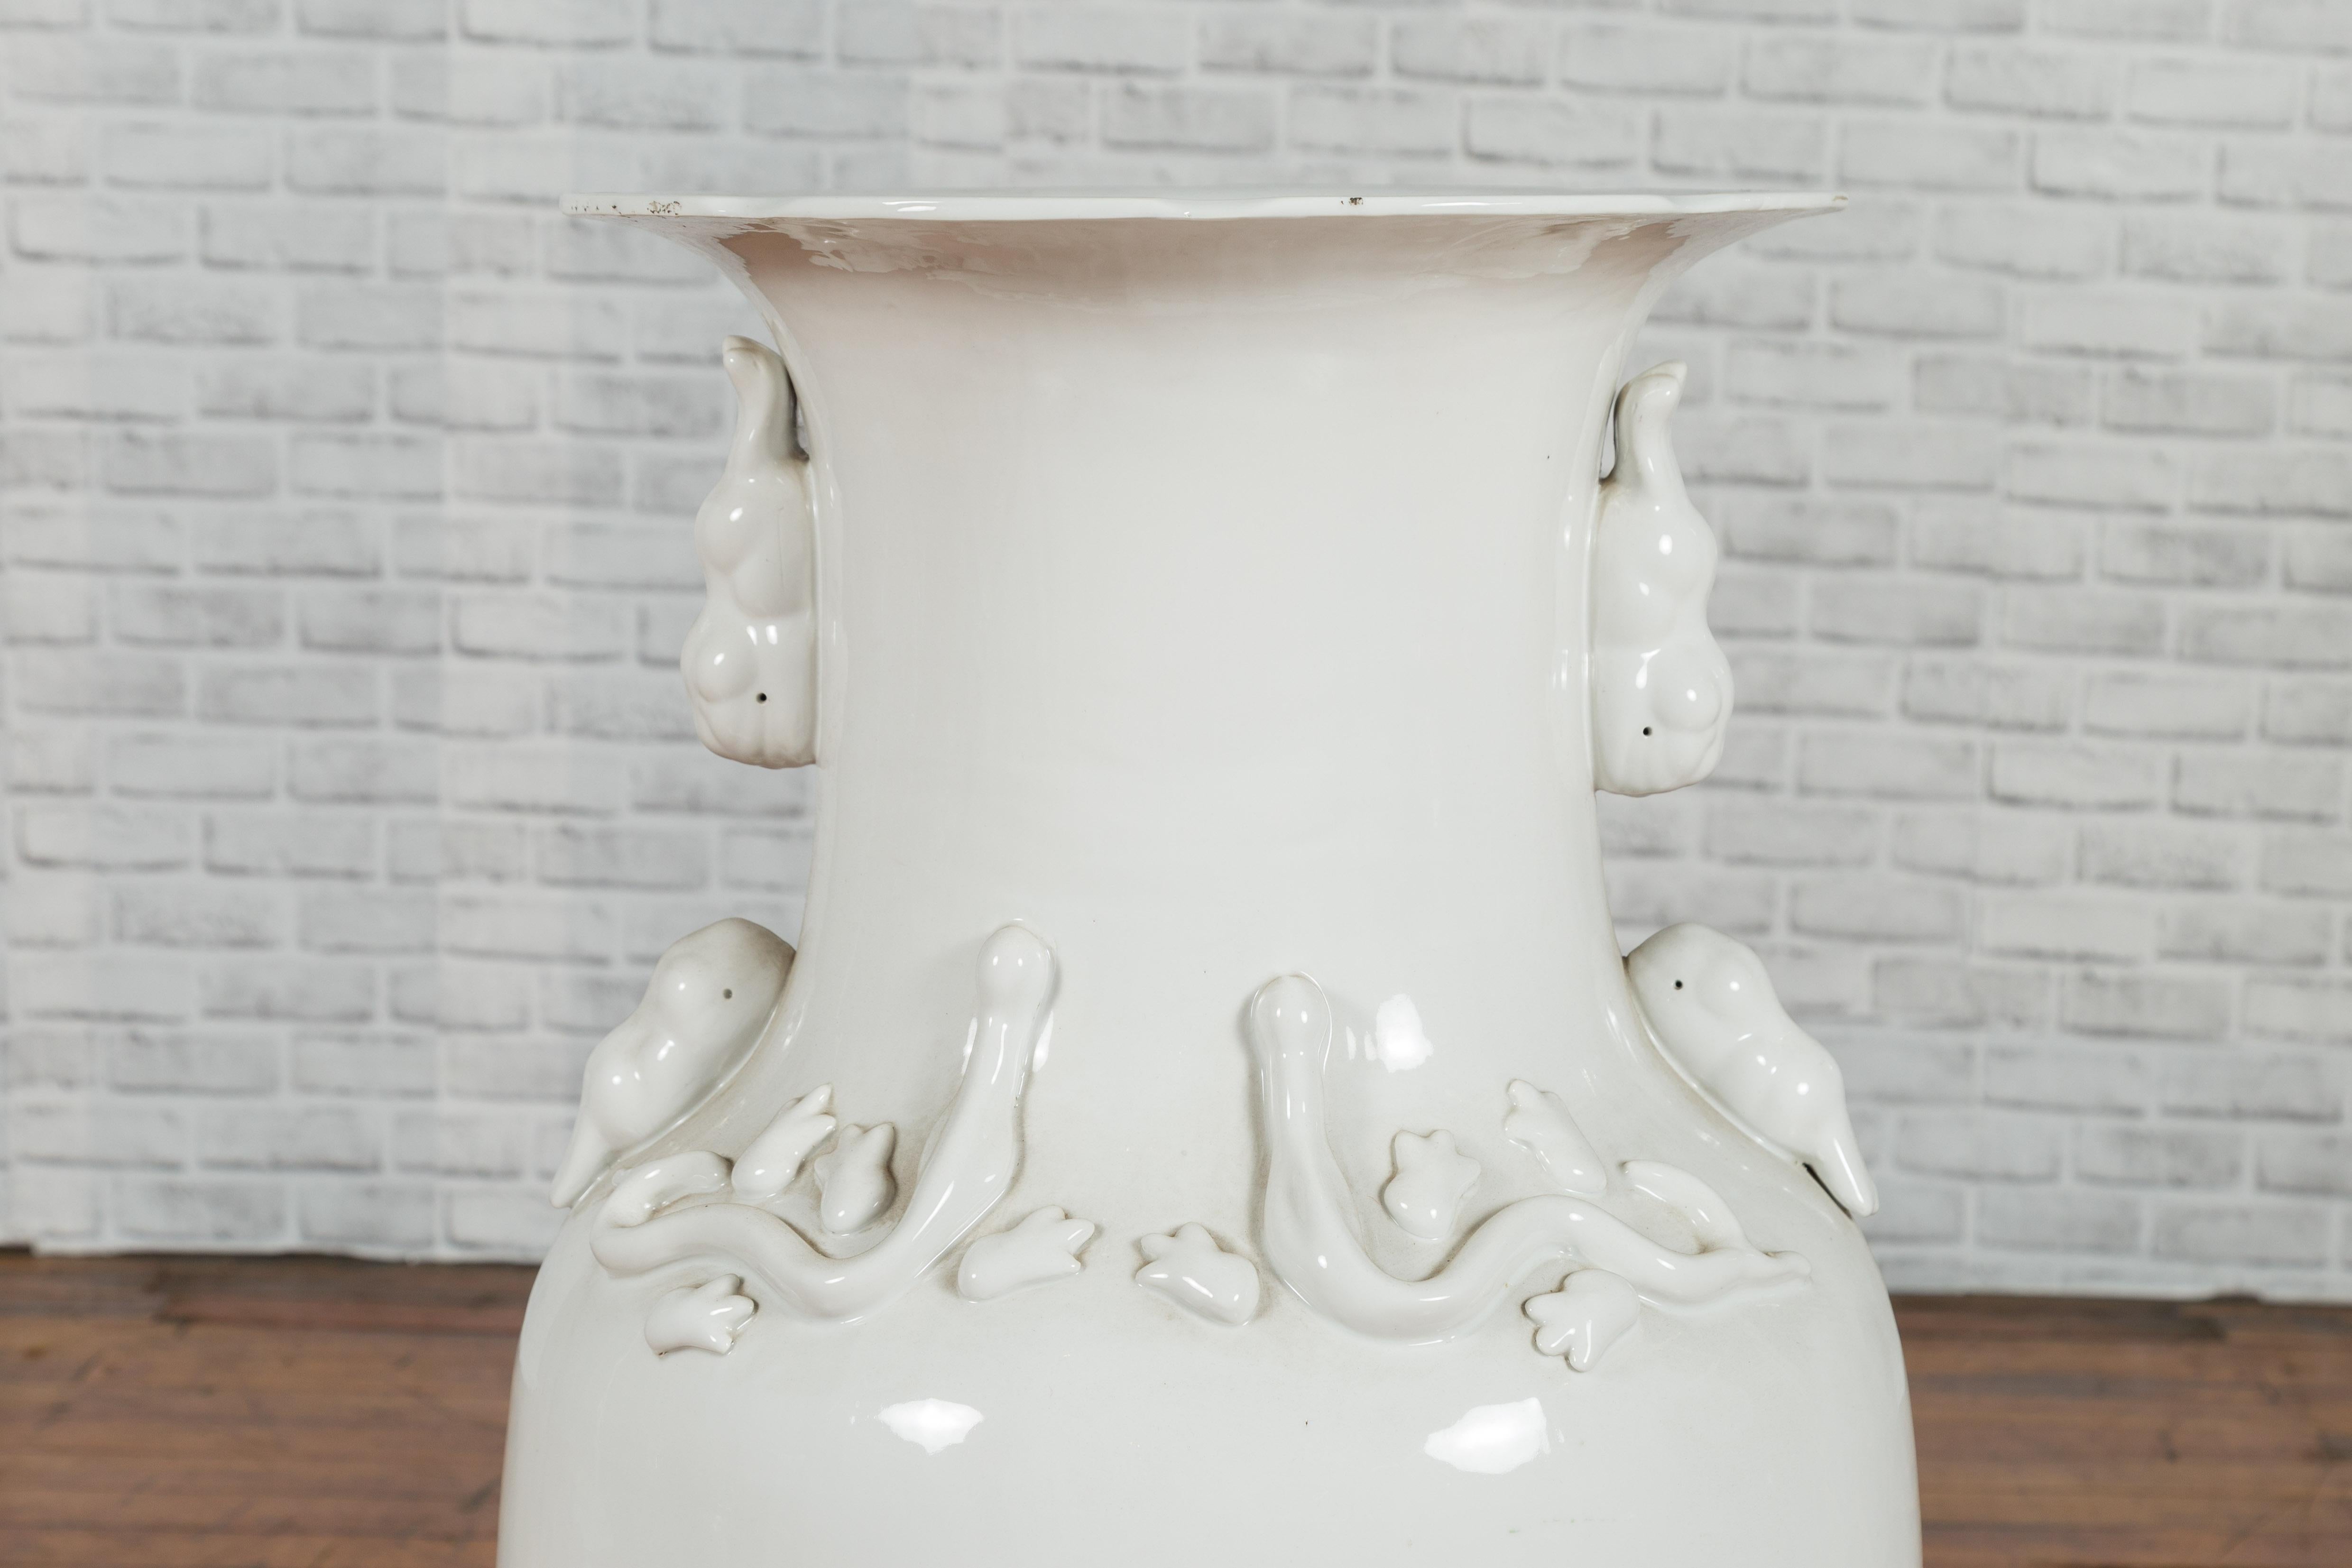 Large Chinese Vintage White Porcelain Palace Vase with Decorative Motifs 1